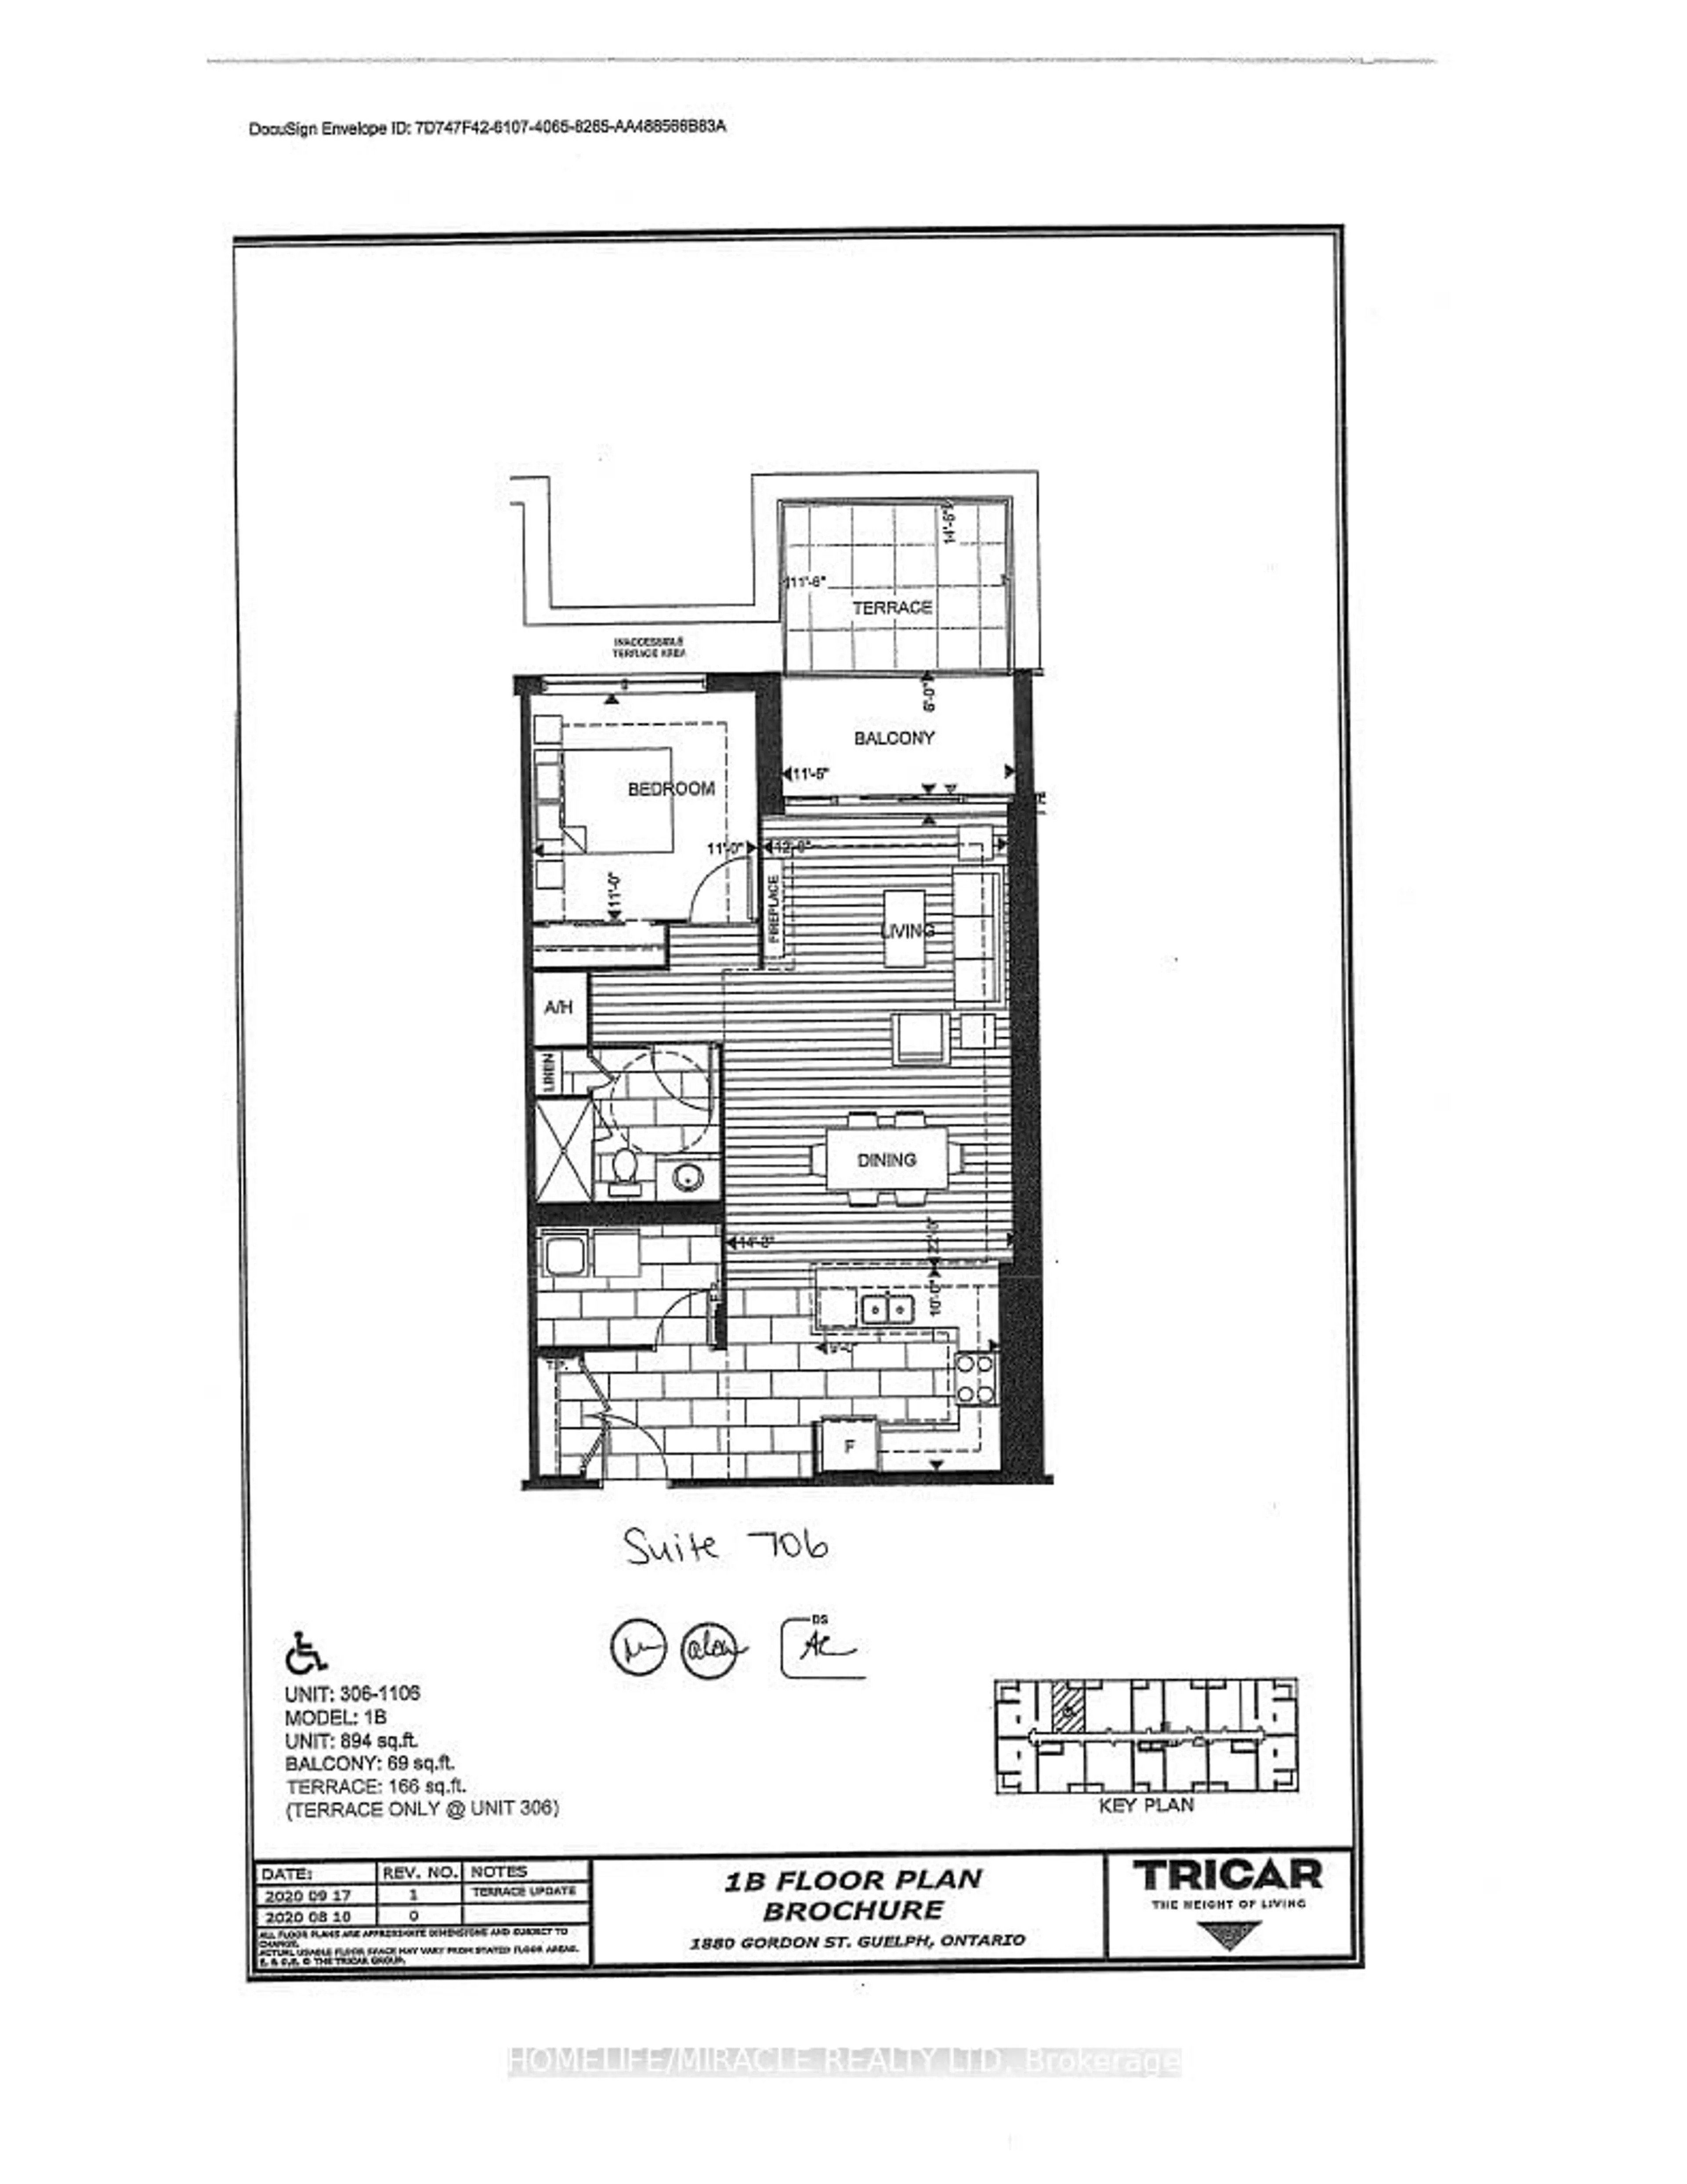 Floor plan for 1880 Gordon St #706, Guelph Ontario N1L 1G6